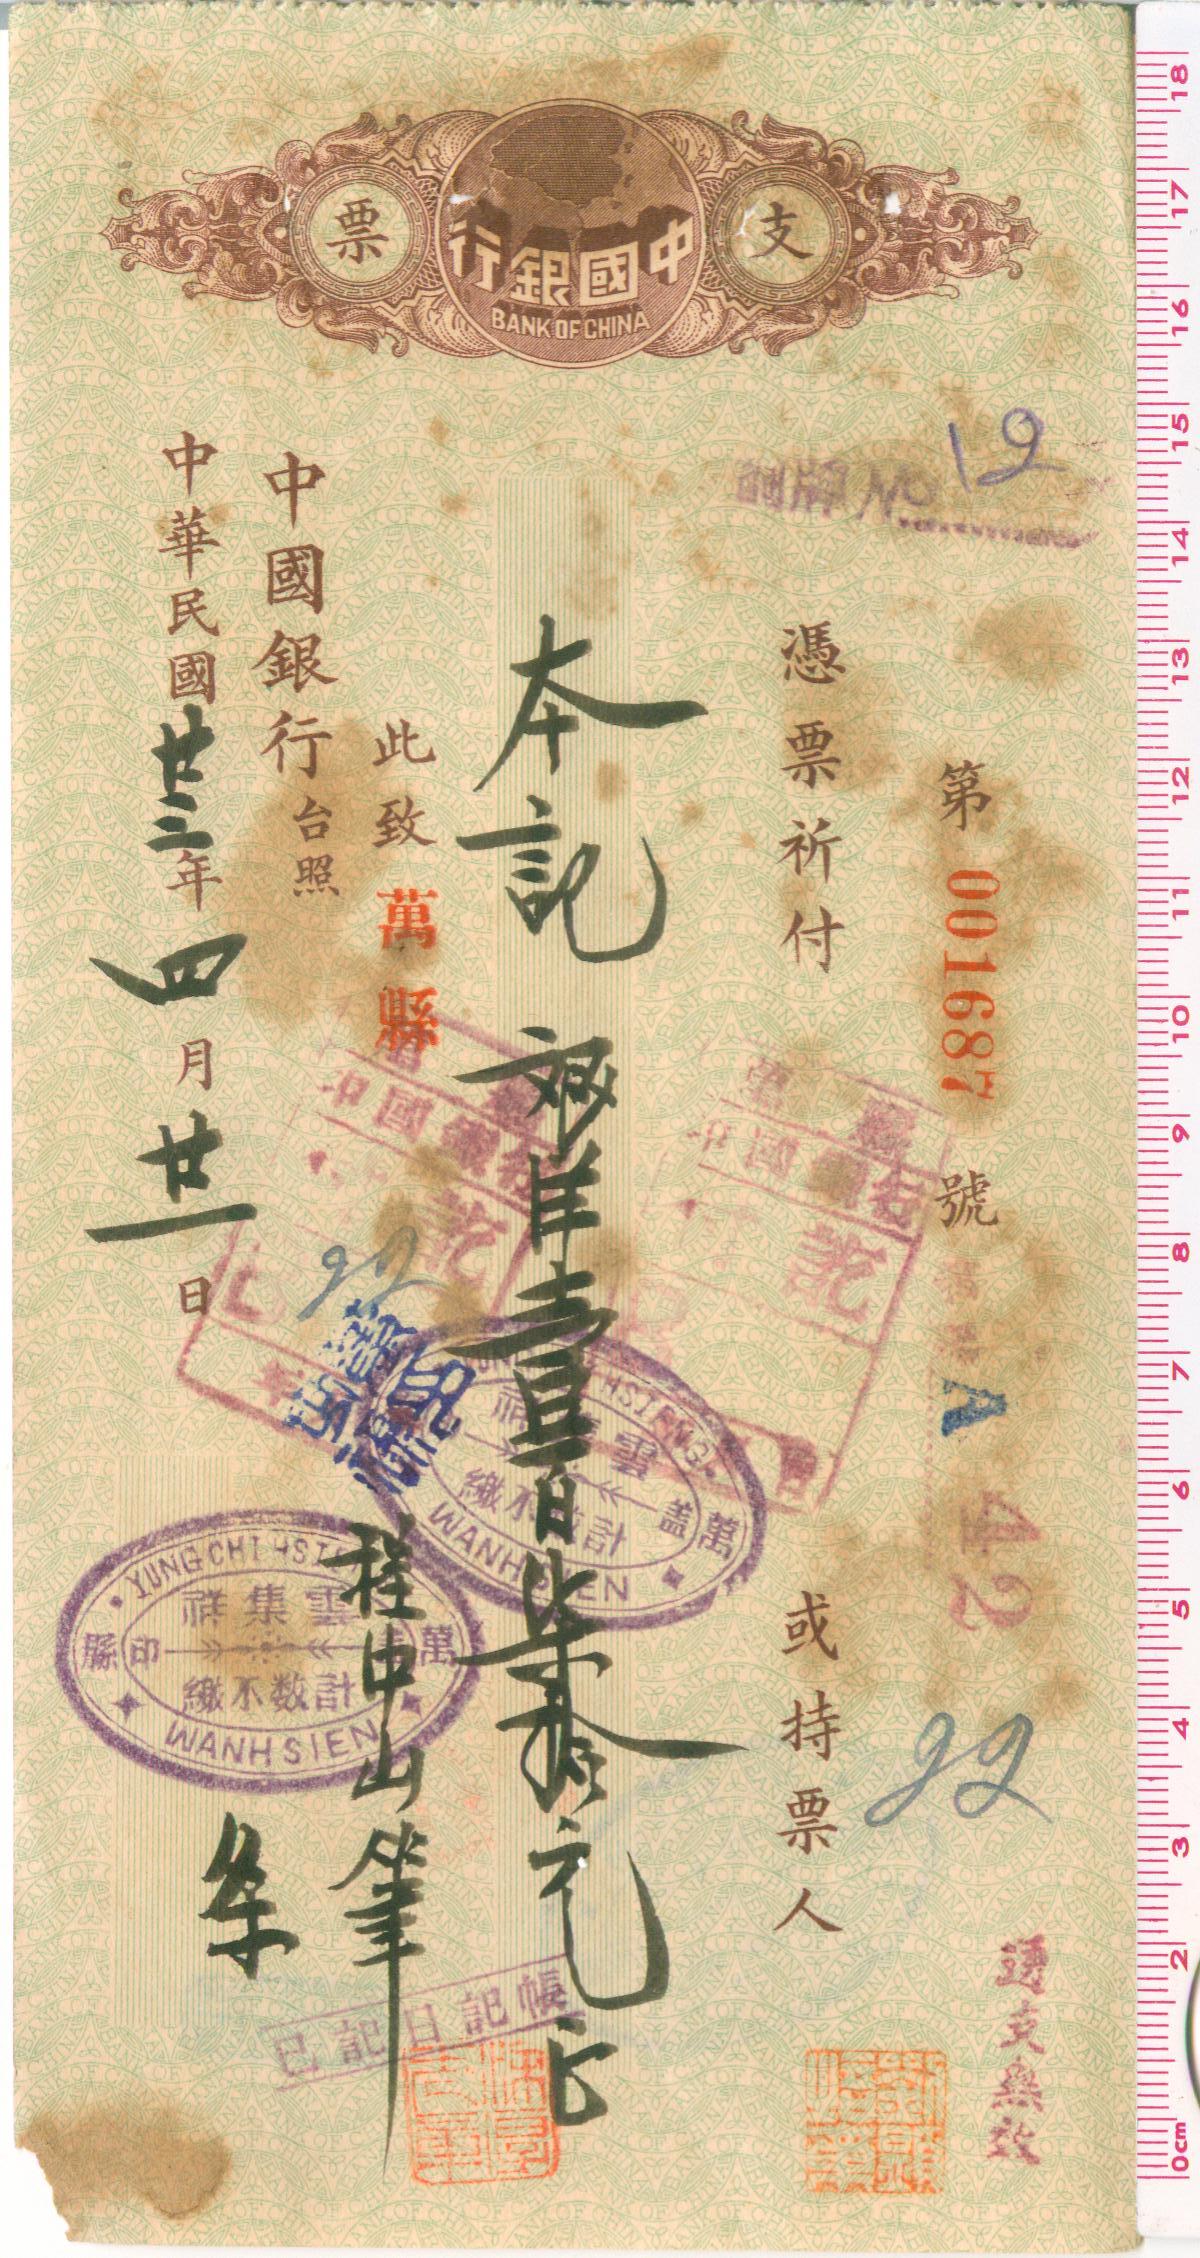 D1062, Check of Bank of China, 1934, Wan County, Chongqing City